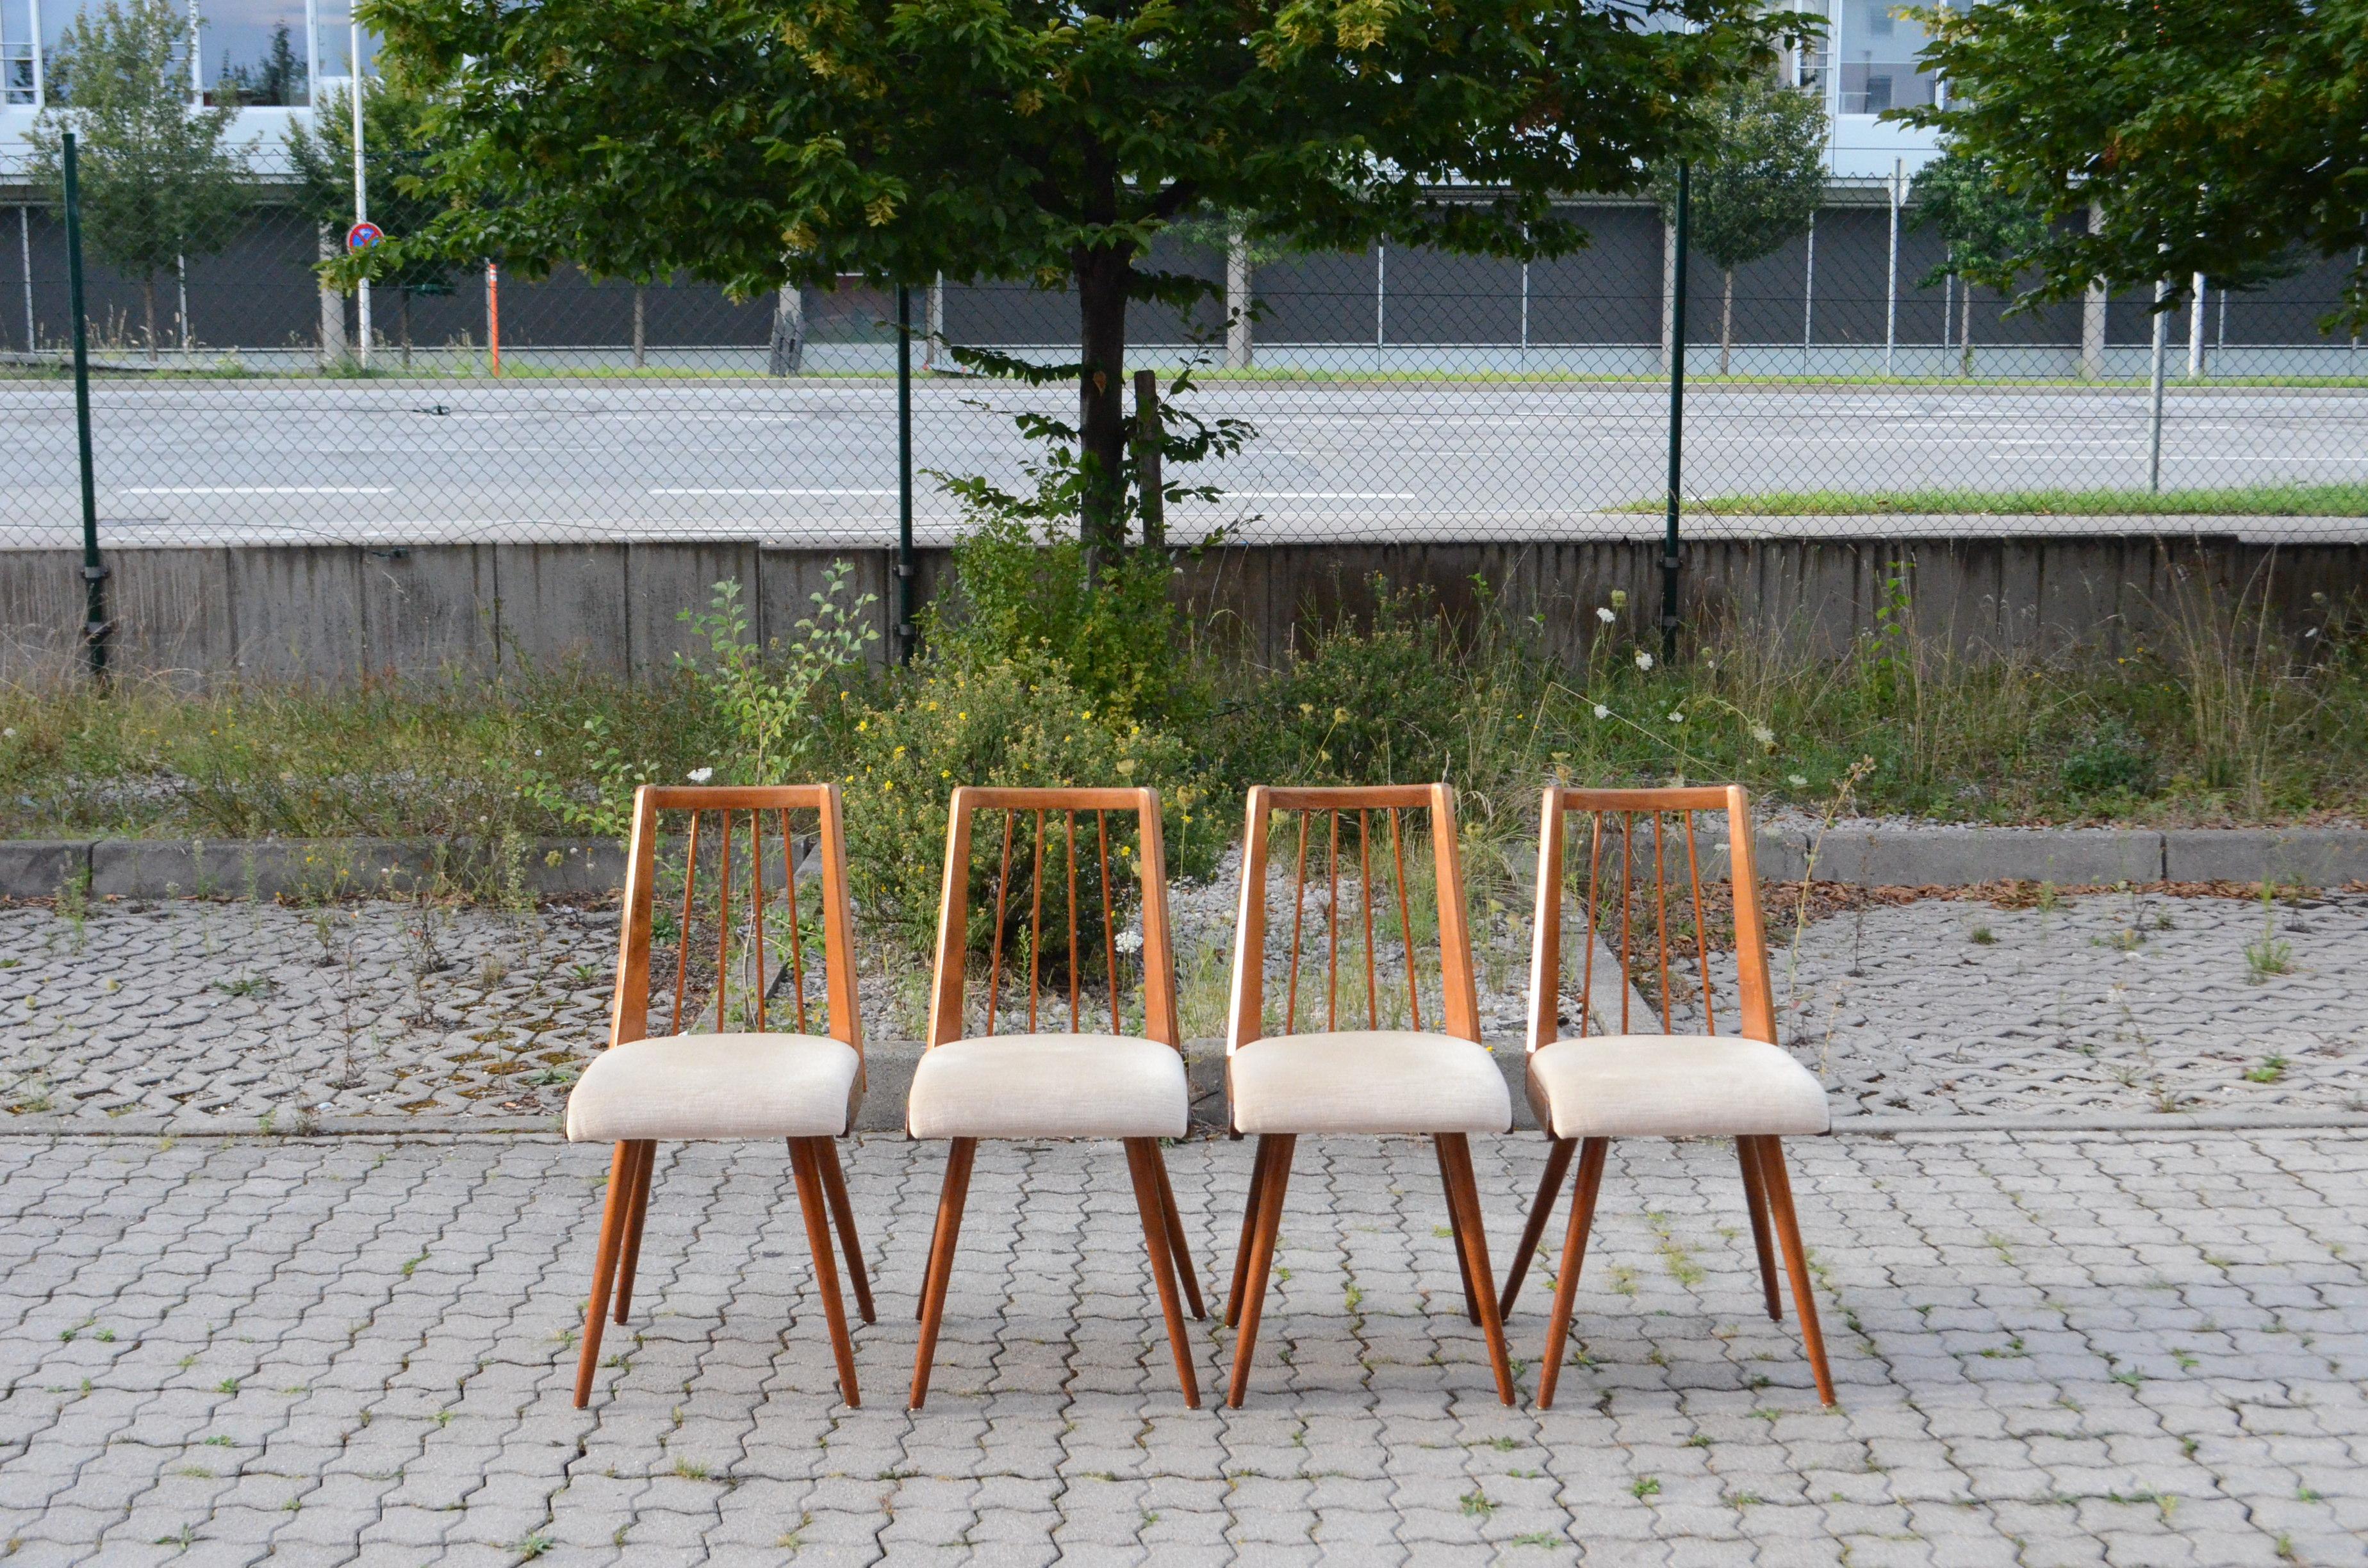 Dieser Stuhl wurde in Deutschland in den 50er Jahren hergestellt
Das Gestell ist aus lackierter Buche in Nussbaum gebeizt.
Der Stoff ist aus ecrufarbenem Mohair
Die Stühle sind in gutem Zustand.
Produzent ist unbekannt 
Satz von 4.